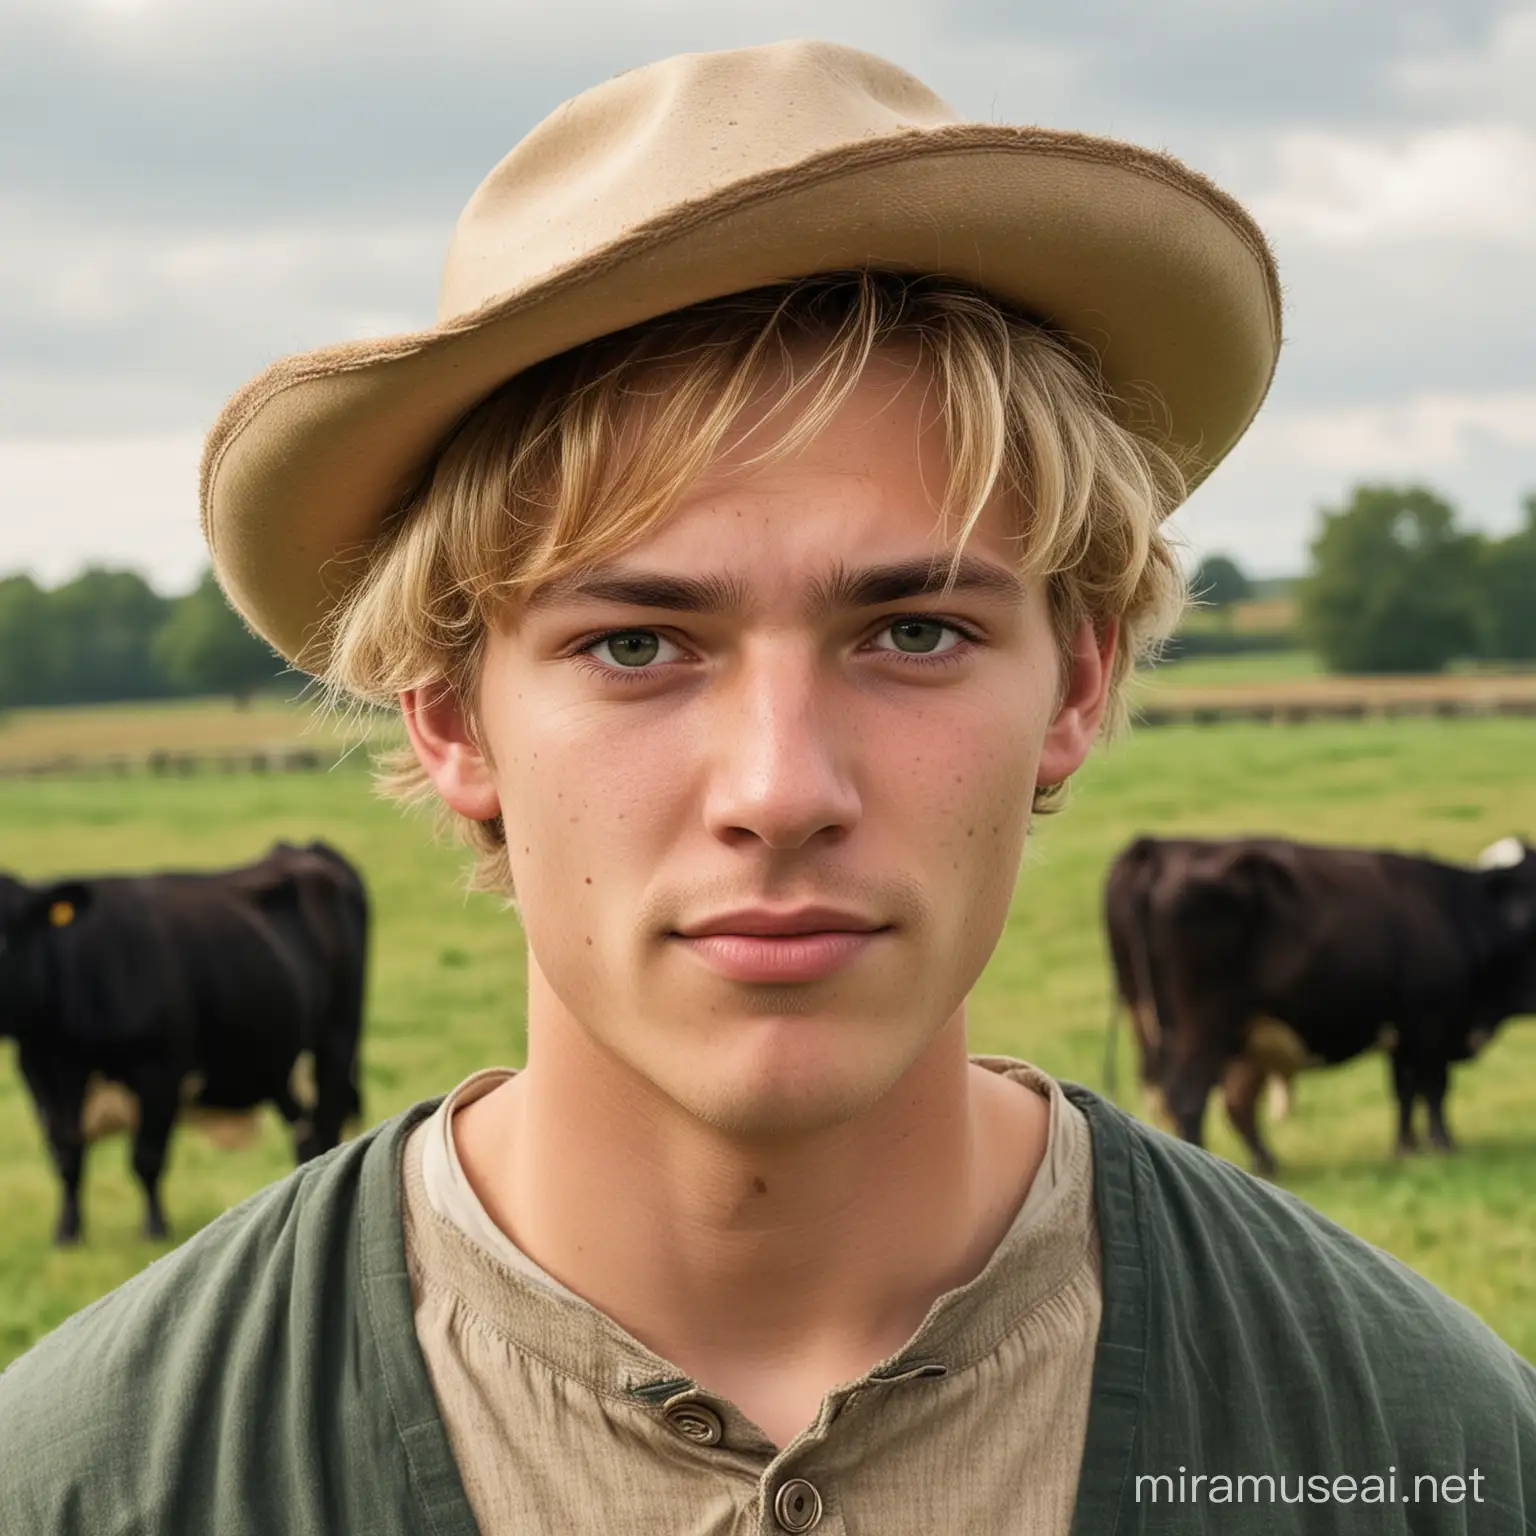 Homme, 17 ans, visage rond, yeux noirs et cheveux blonds. Dans le fond des vaches dans un pâturage. Une tenue de fermier dans l'antiquité